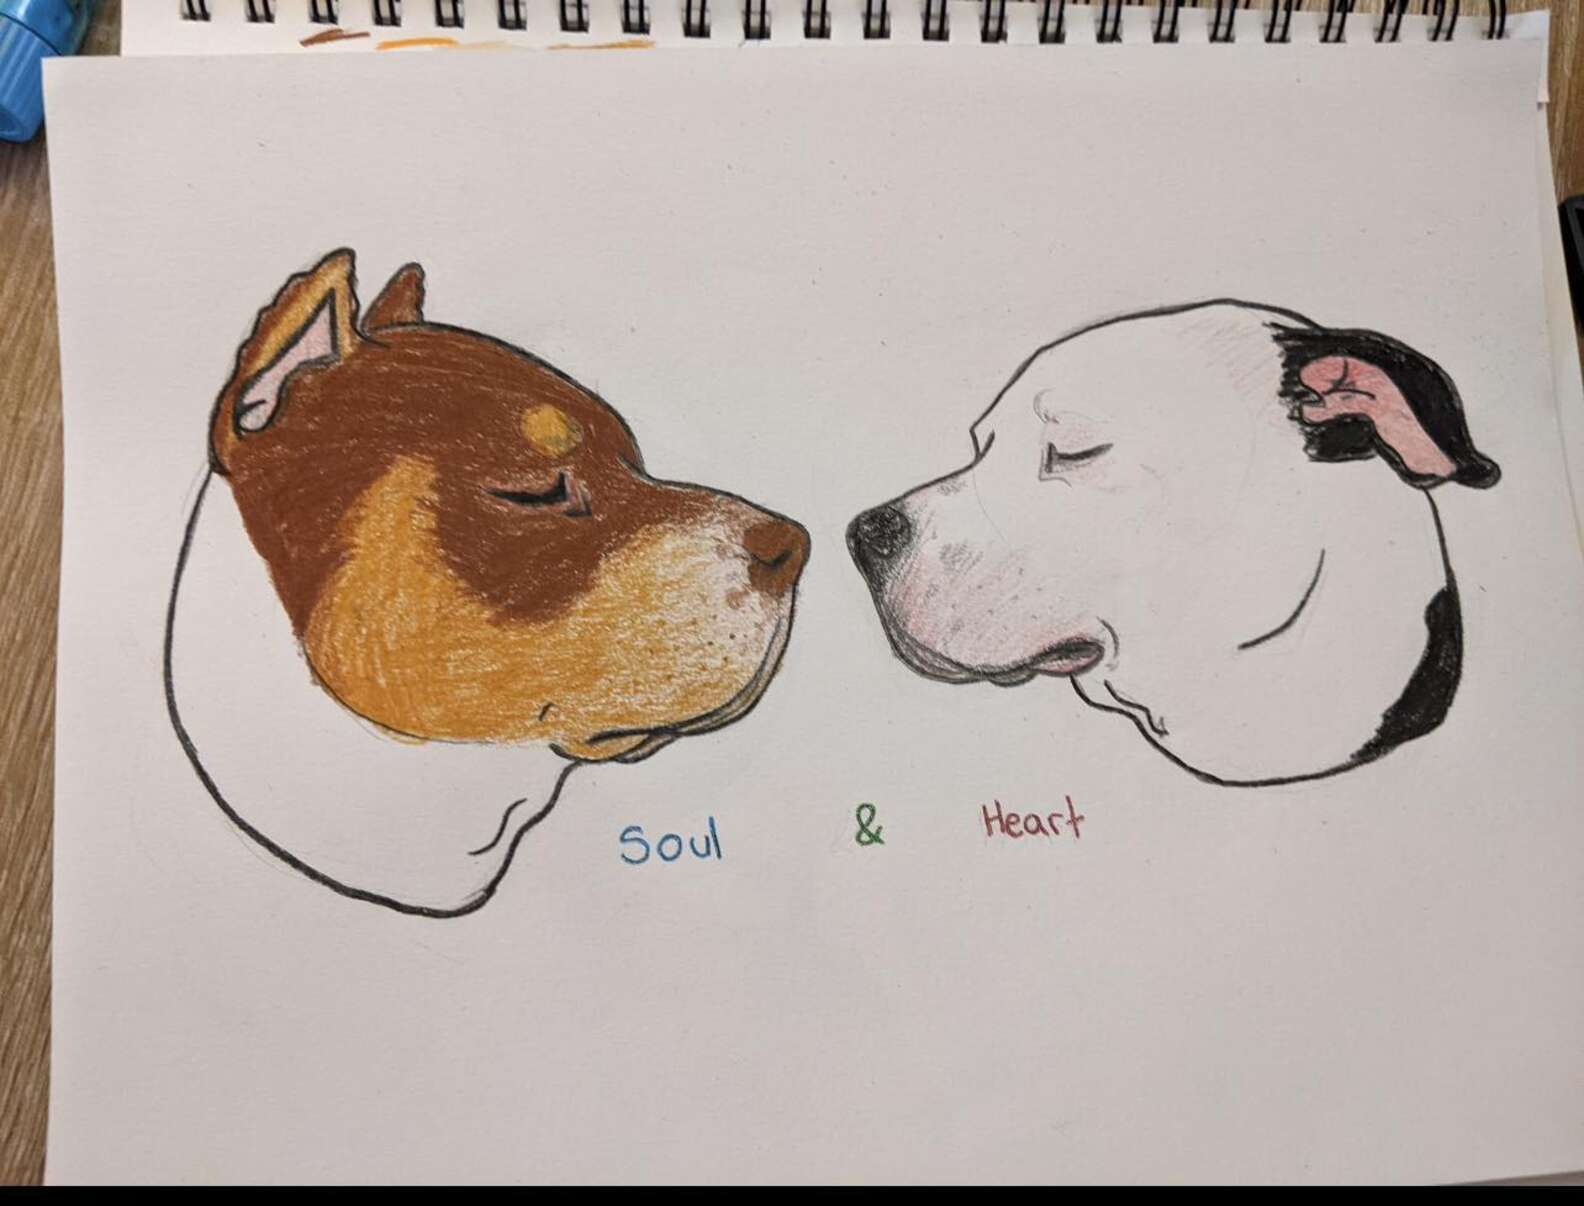 A két kutya - Soul és Heart - Lélek és Szív együtt, örökké